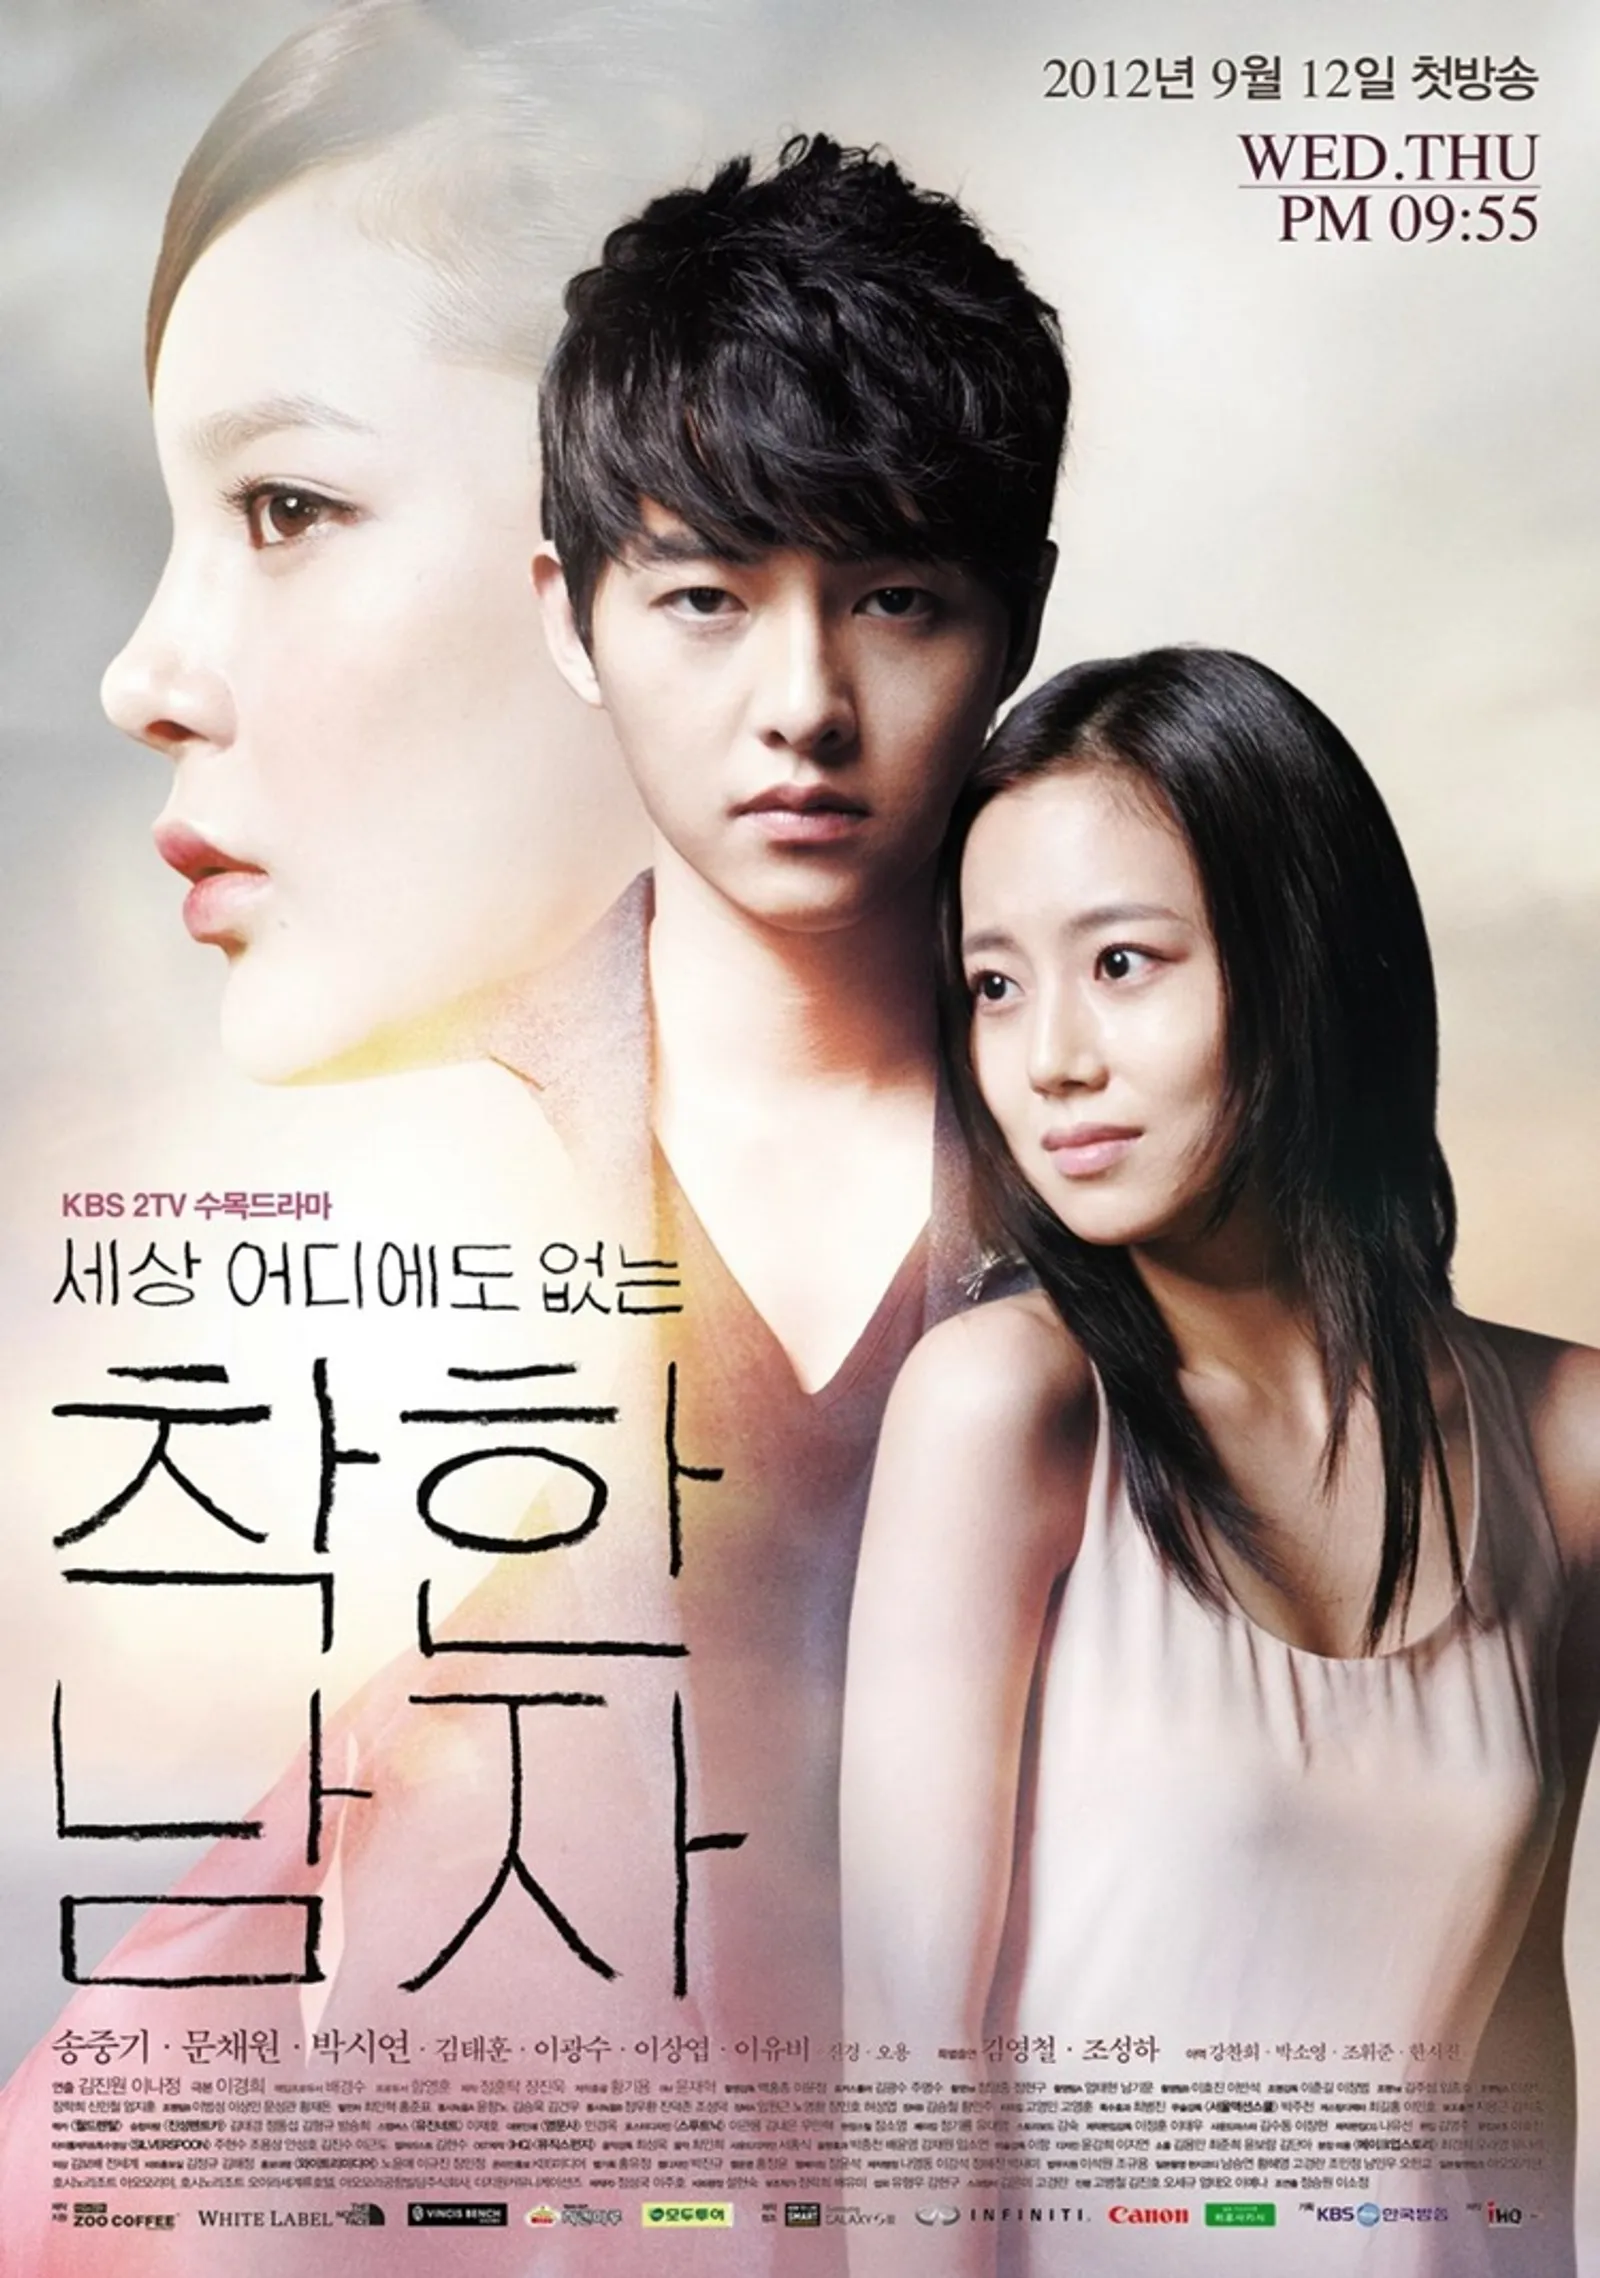 10 Drama Korea tentang Musuh Jadi Cinta, Endingnya Bikin Gemas!